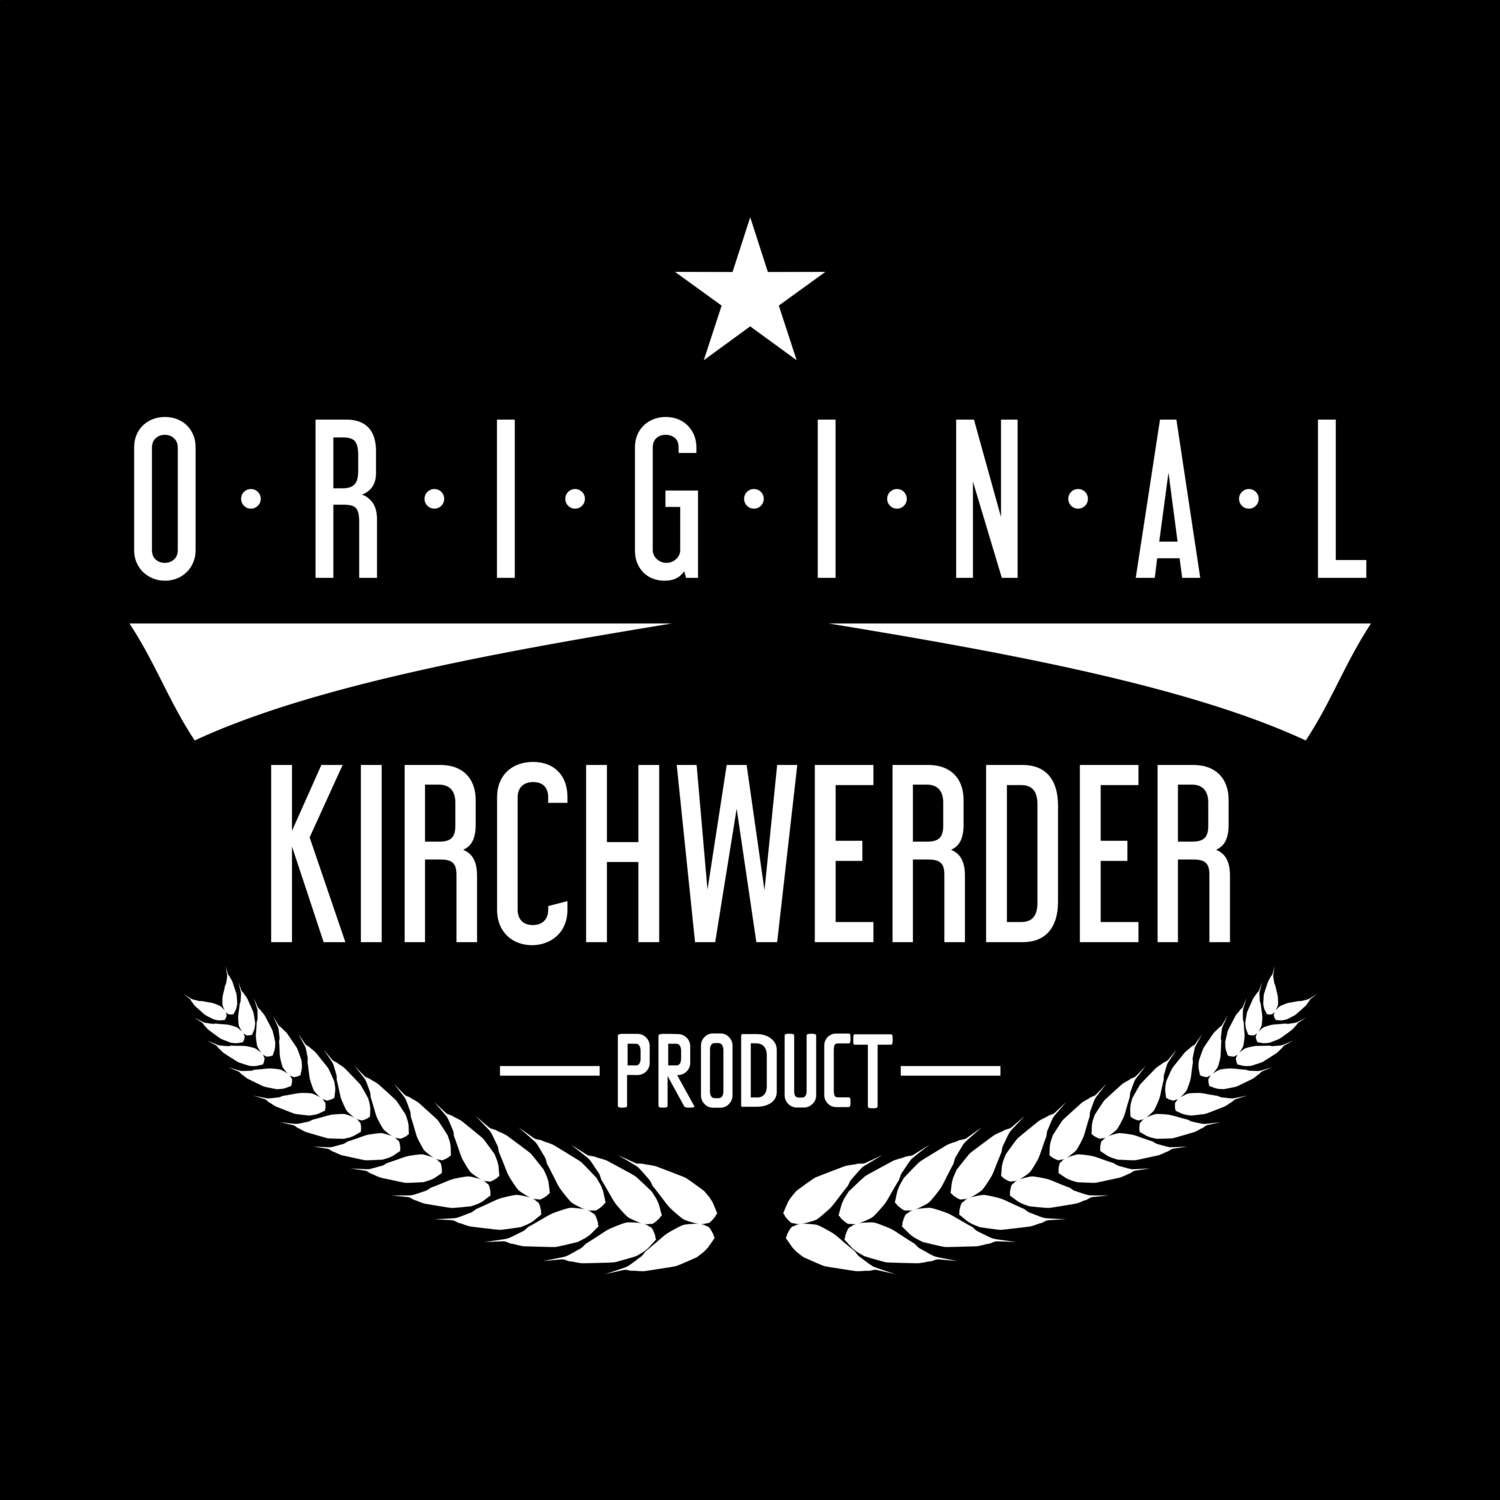 Kirchwerder T-Shirt »Original Product«